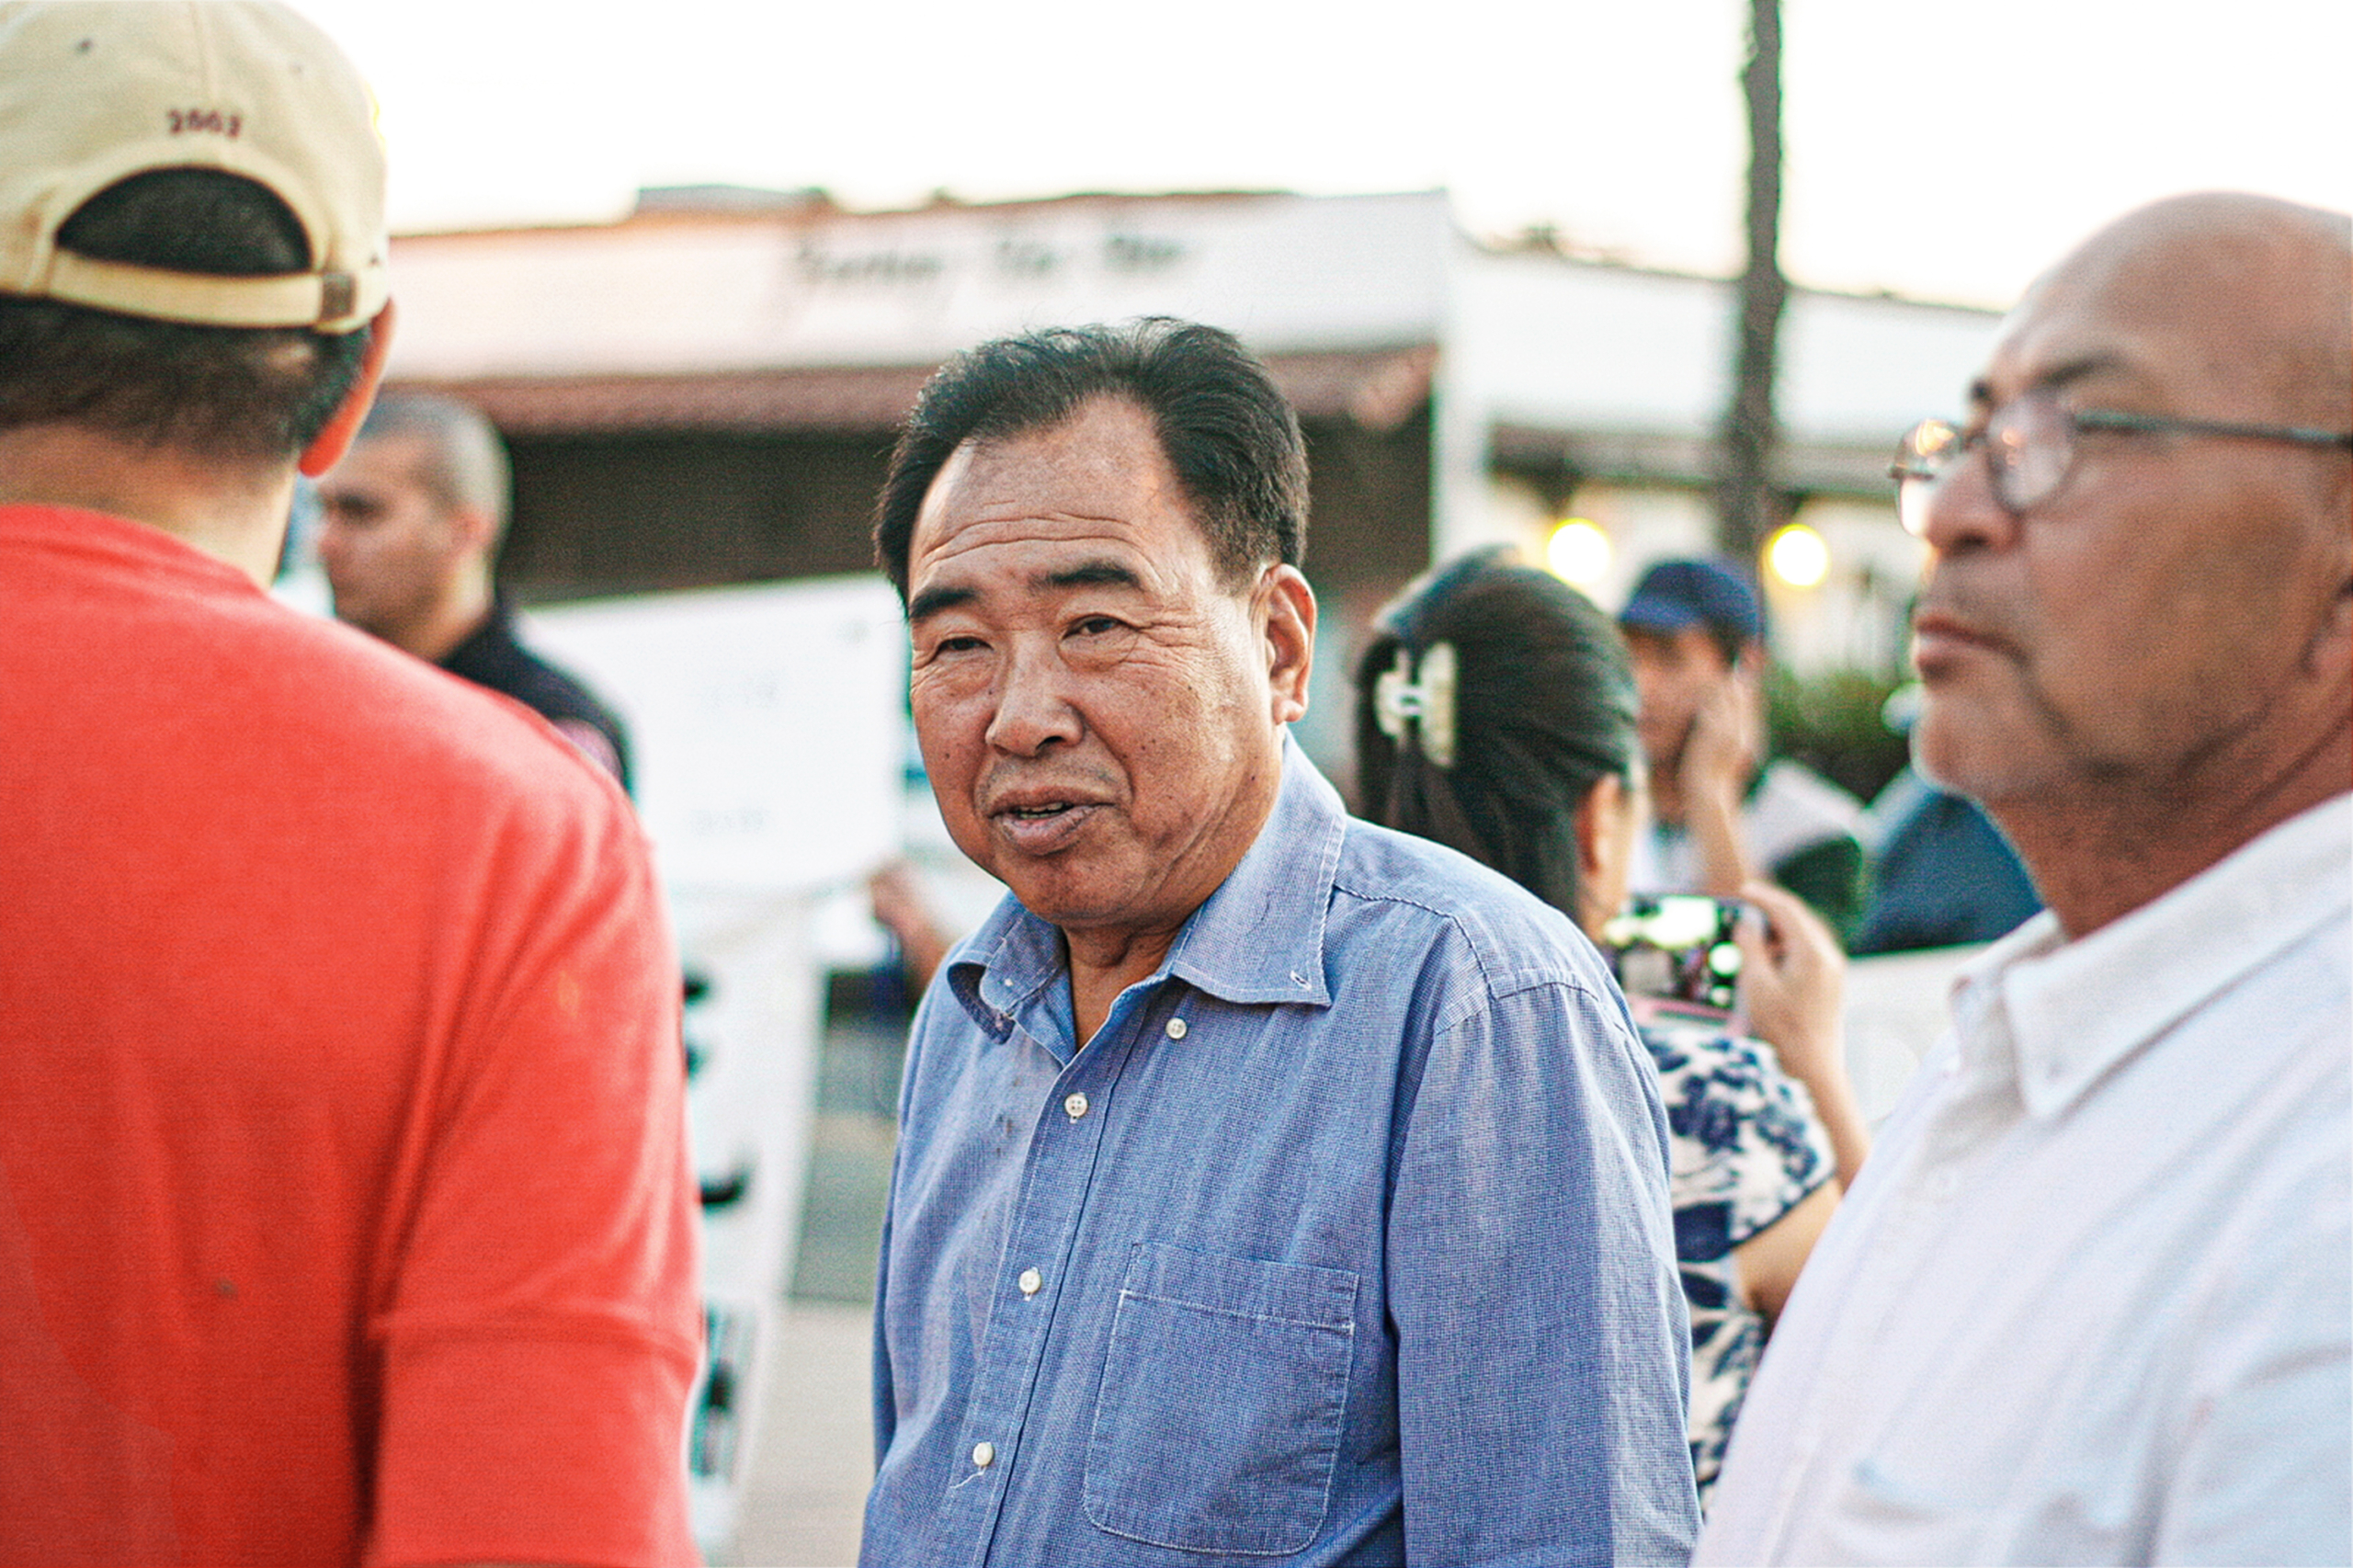 Ông Trần Quân, hay còn gọi là John Chen, tham dự một sự kiện ủng hộ Bắc Kinh do ông tổ chức tại San Gabriel Mission Playhouse ở California vào tháng 10/2016. (Ảnh: Liu Fei/The Epoch Times)